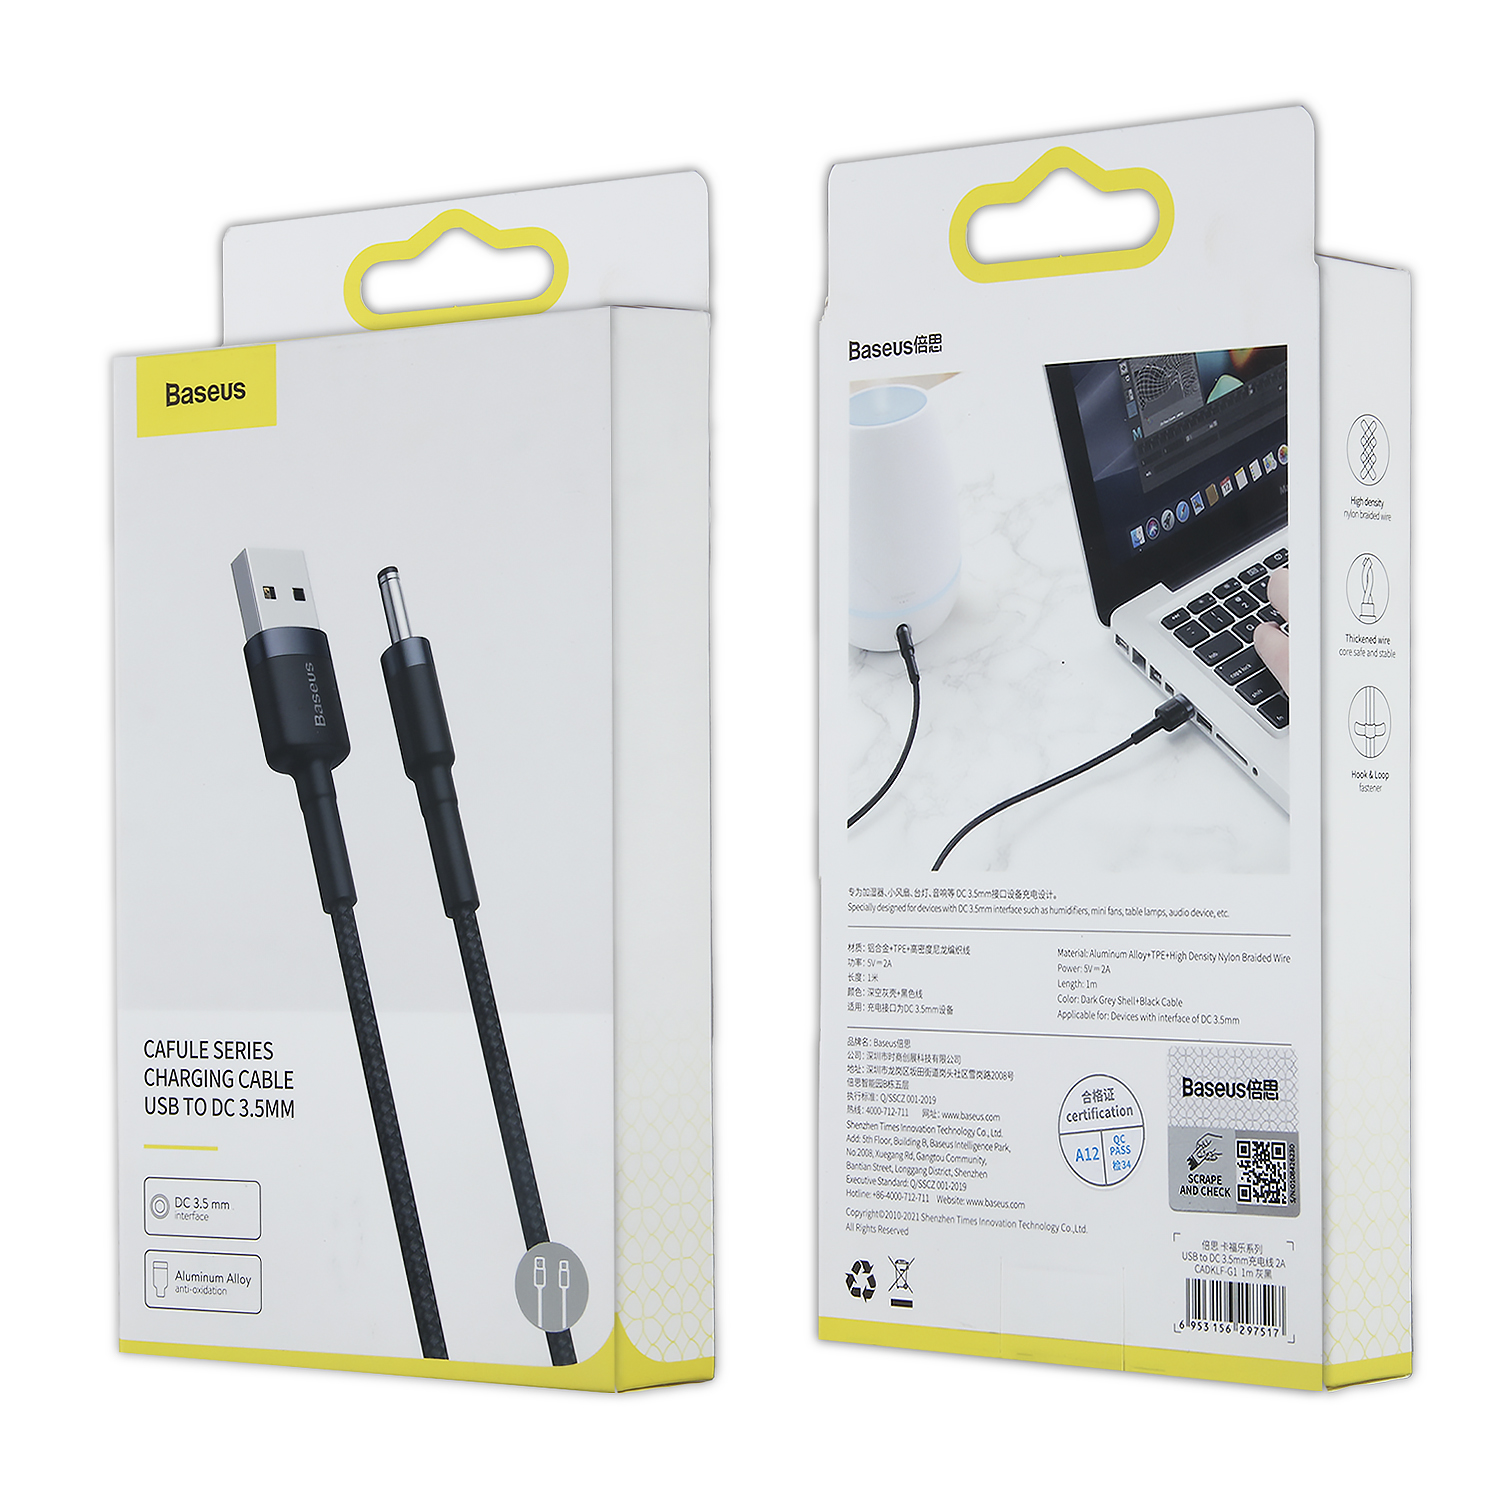 Кабель Cafule Cable USB to DC 3.5mm 2A 1m Baseus CARKLF-G1 черно-серый